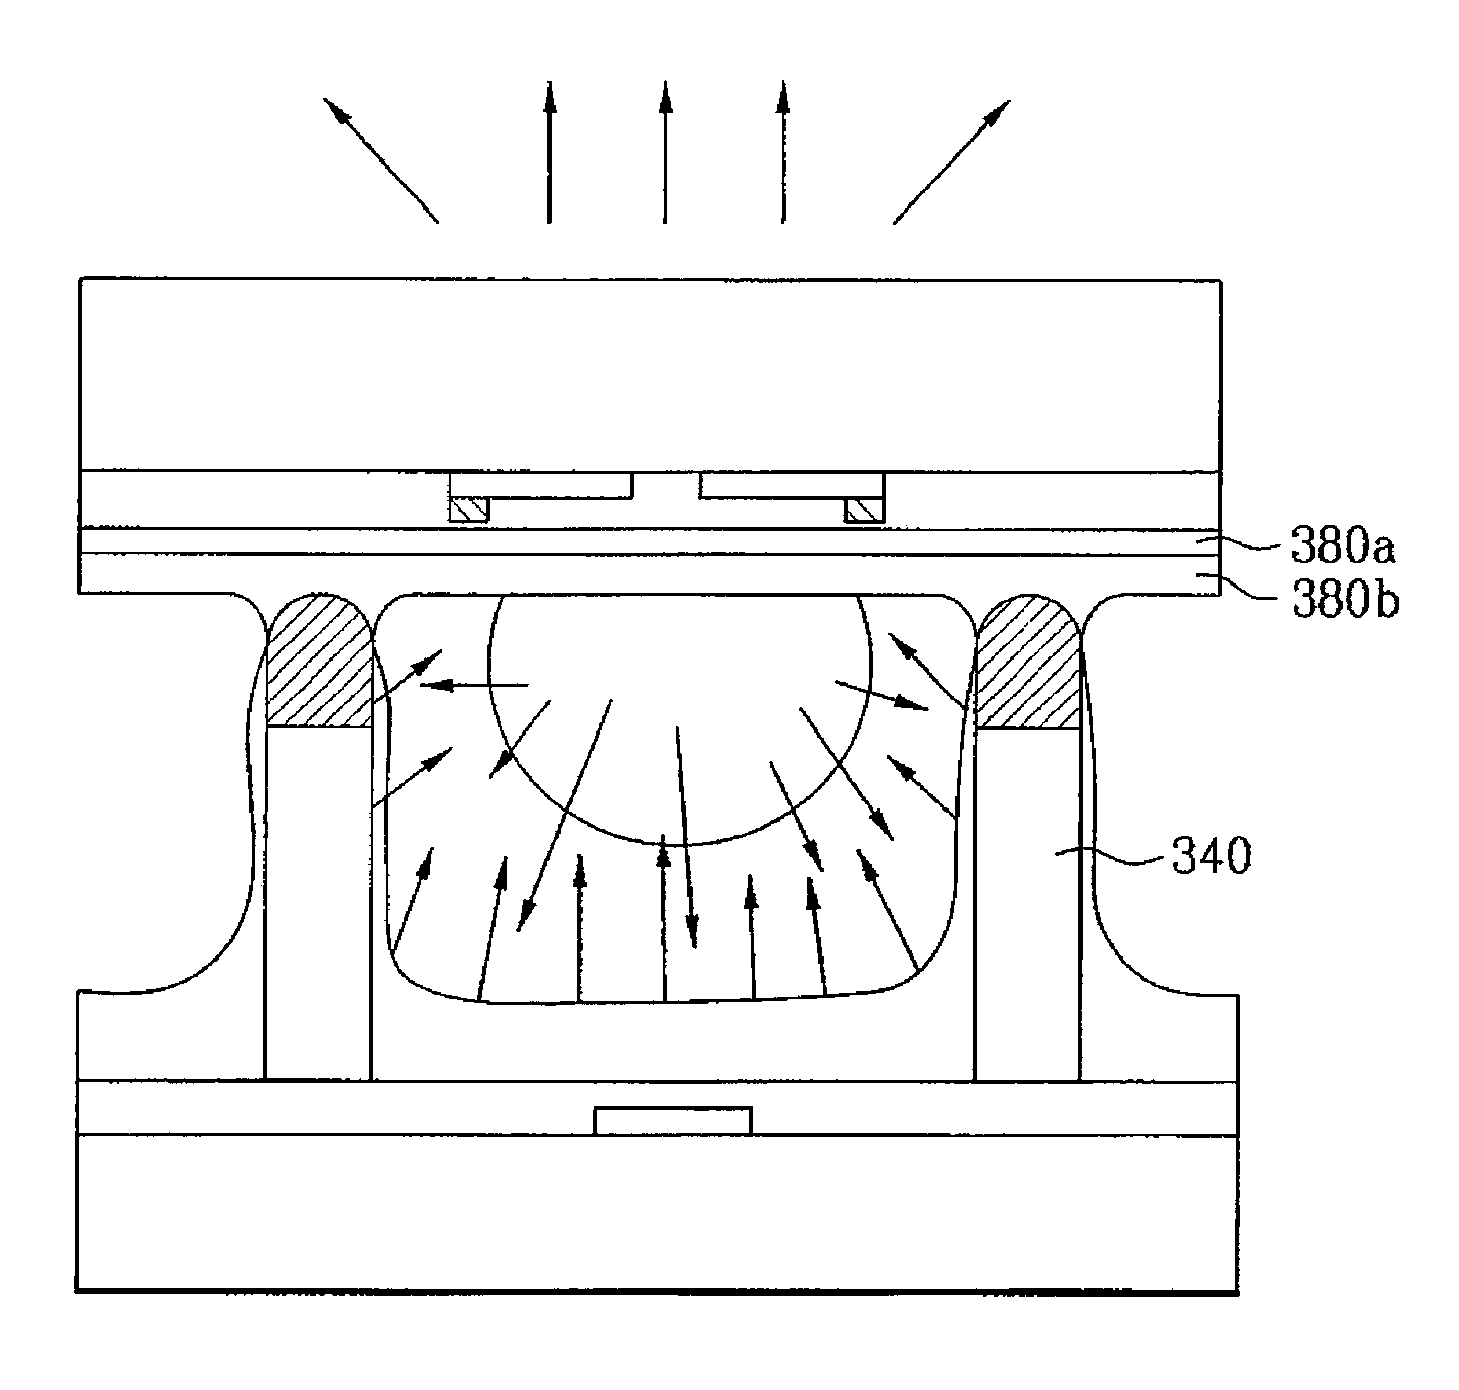 Plasma display panel and method for producing the same